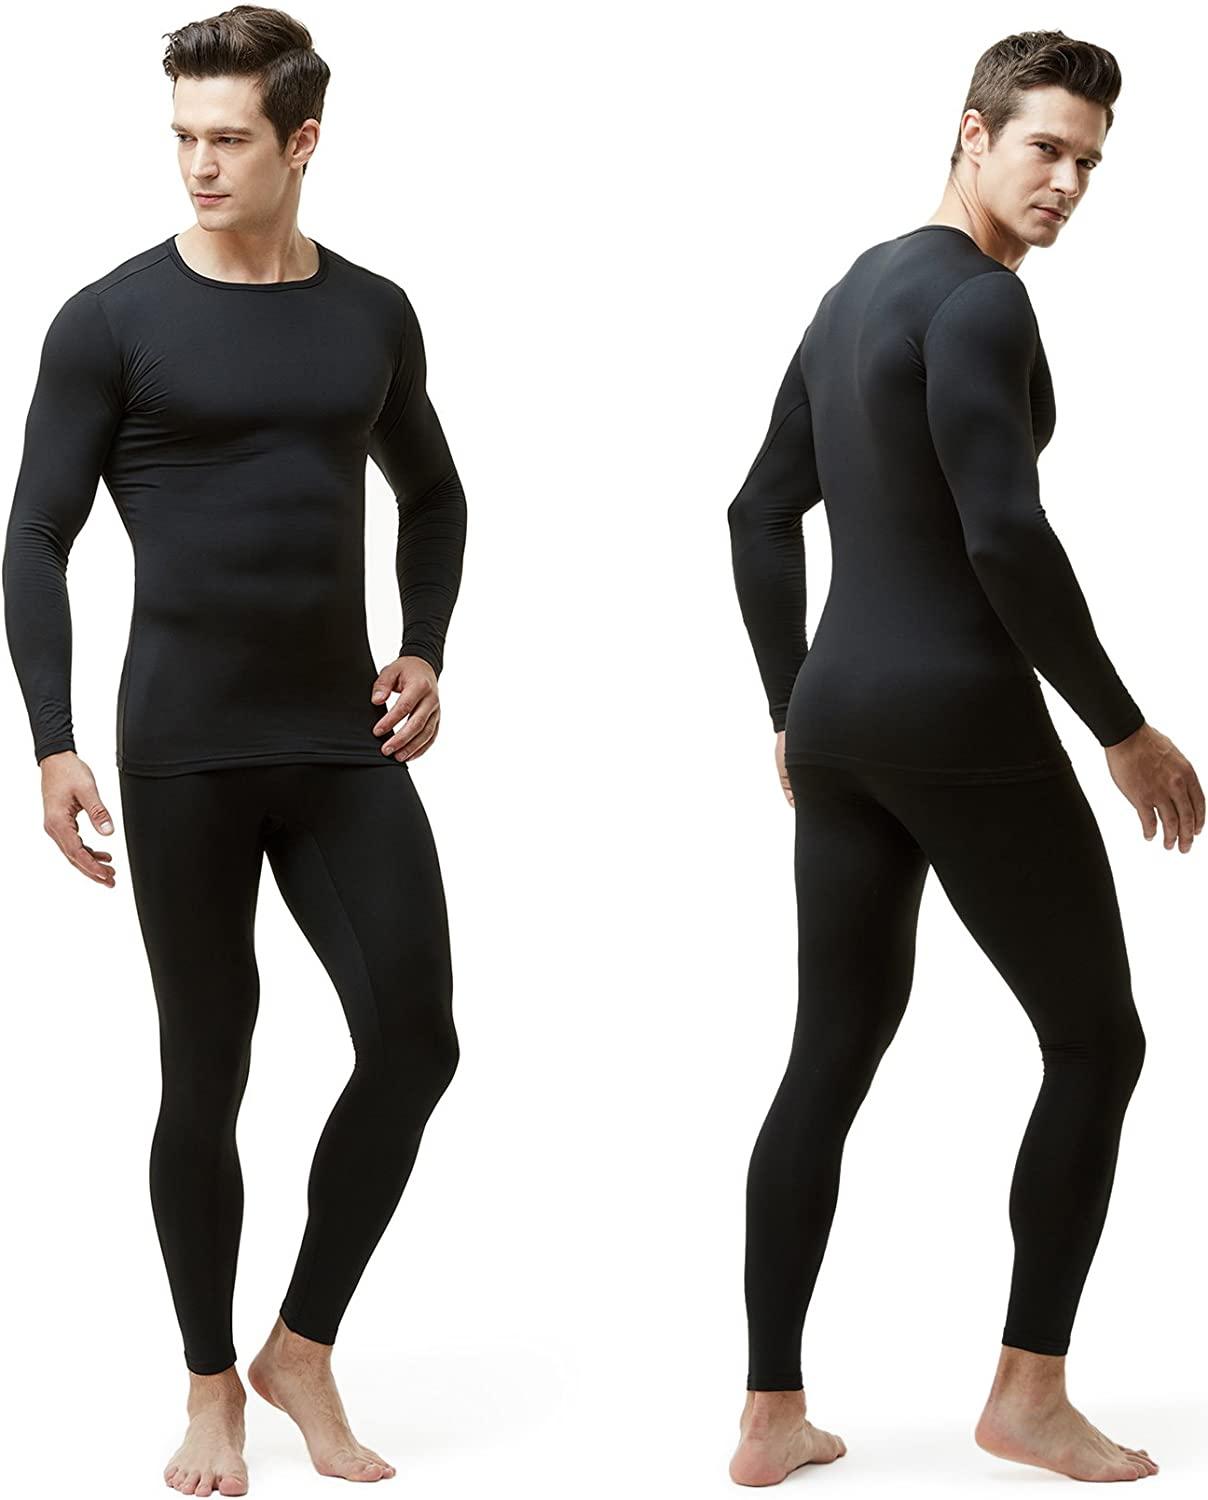 Men?s Thermal Underwear, Compression Winter Base Layer Warm Gear Sport Set